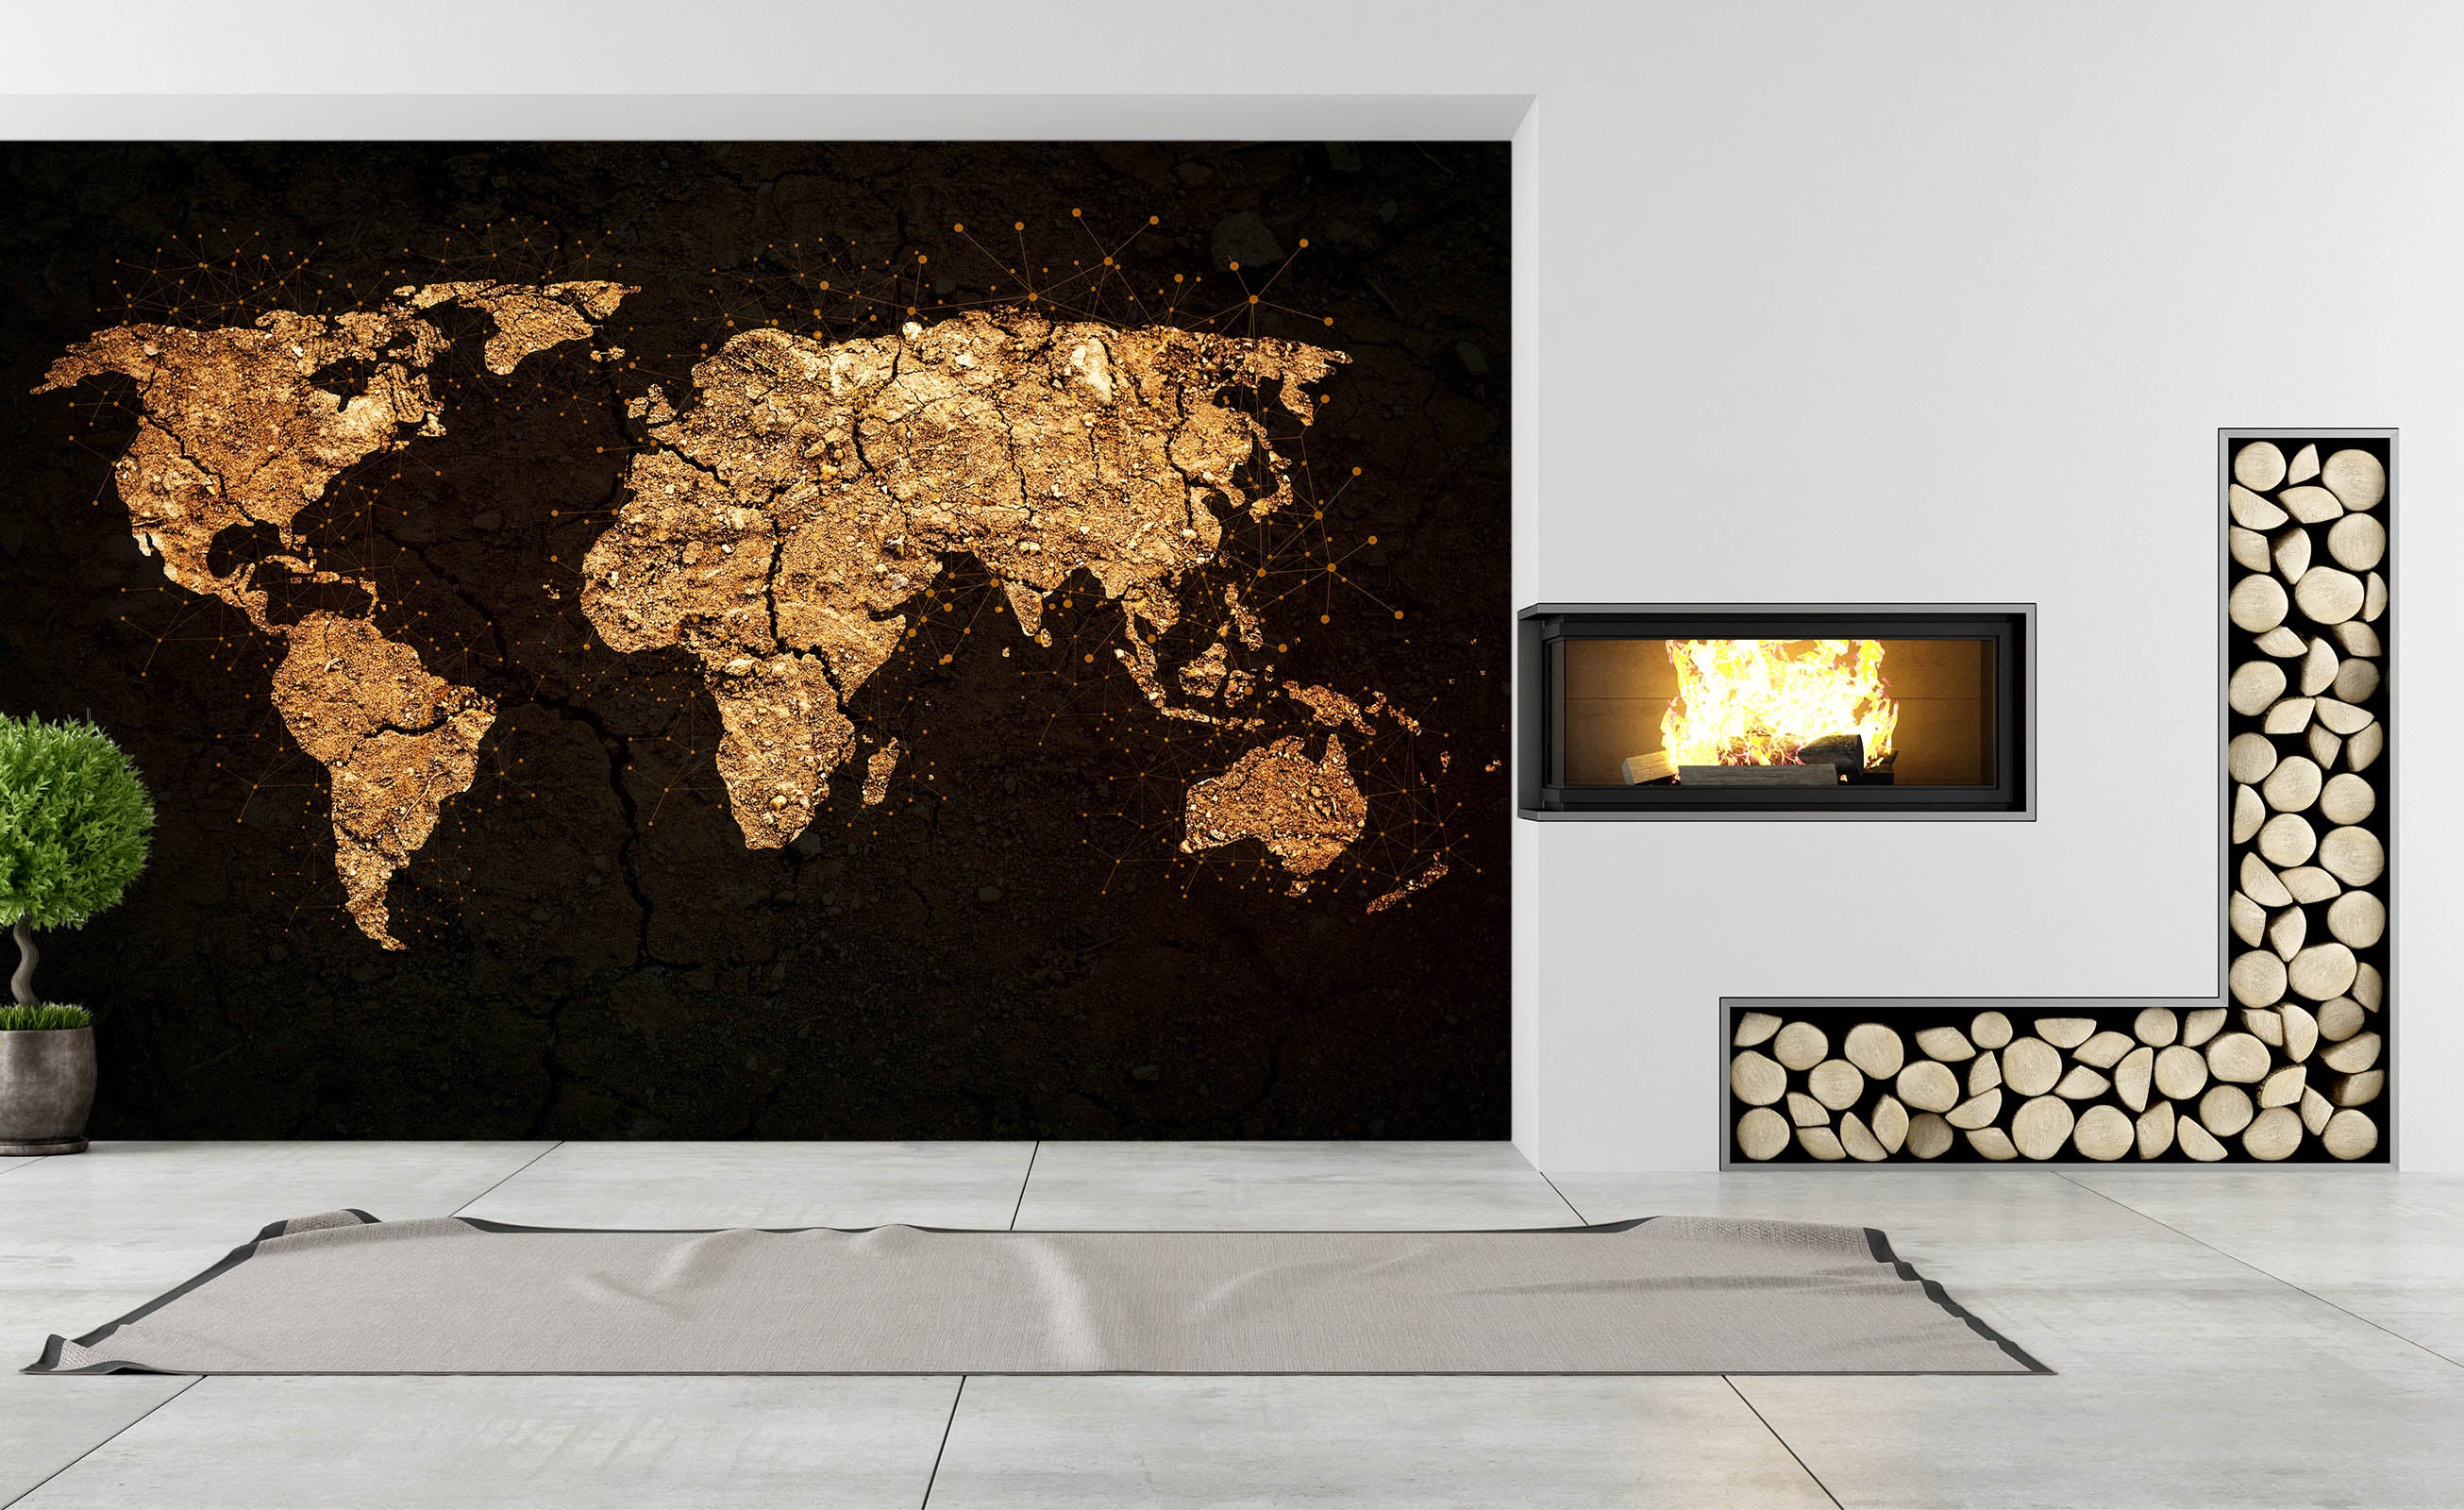 3D Golden Art 2059 World Map Wall Murals